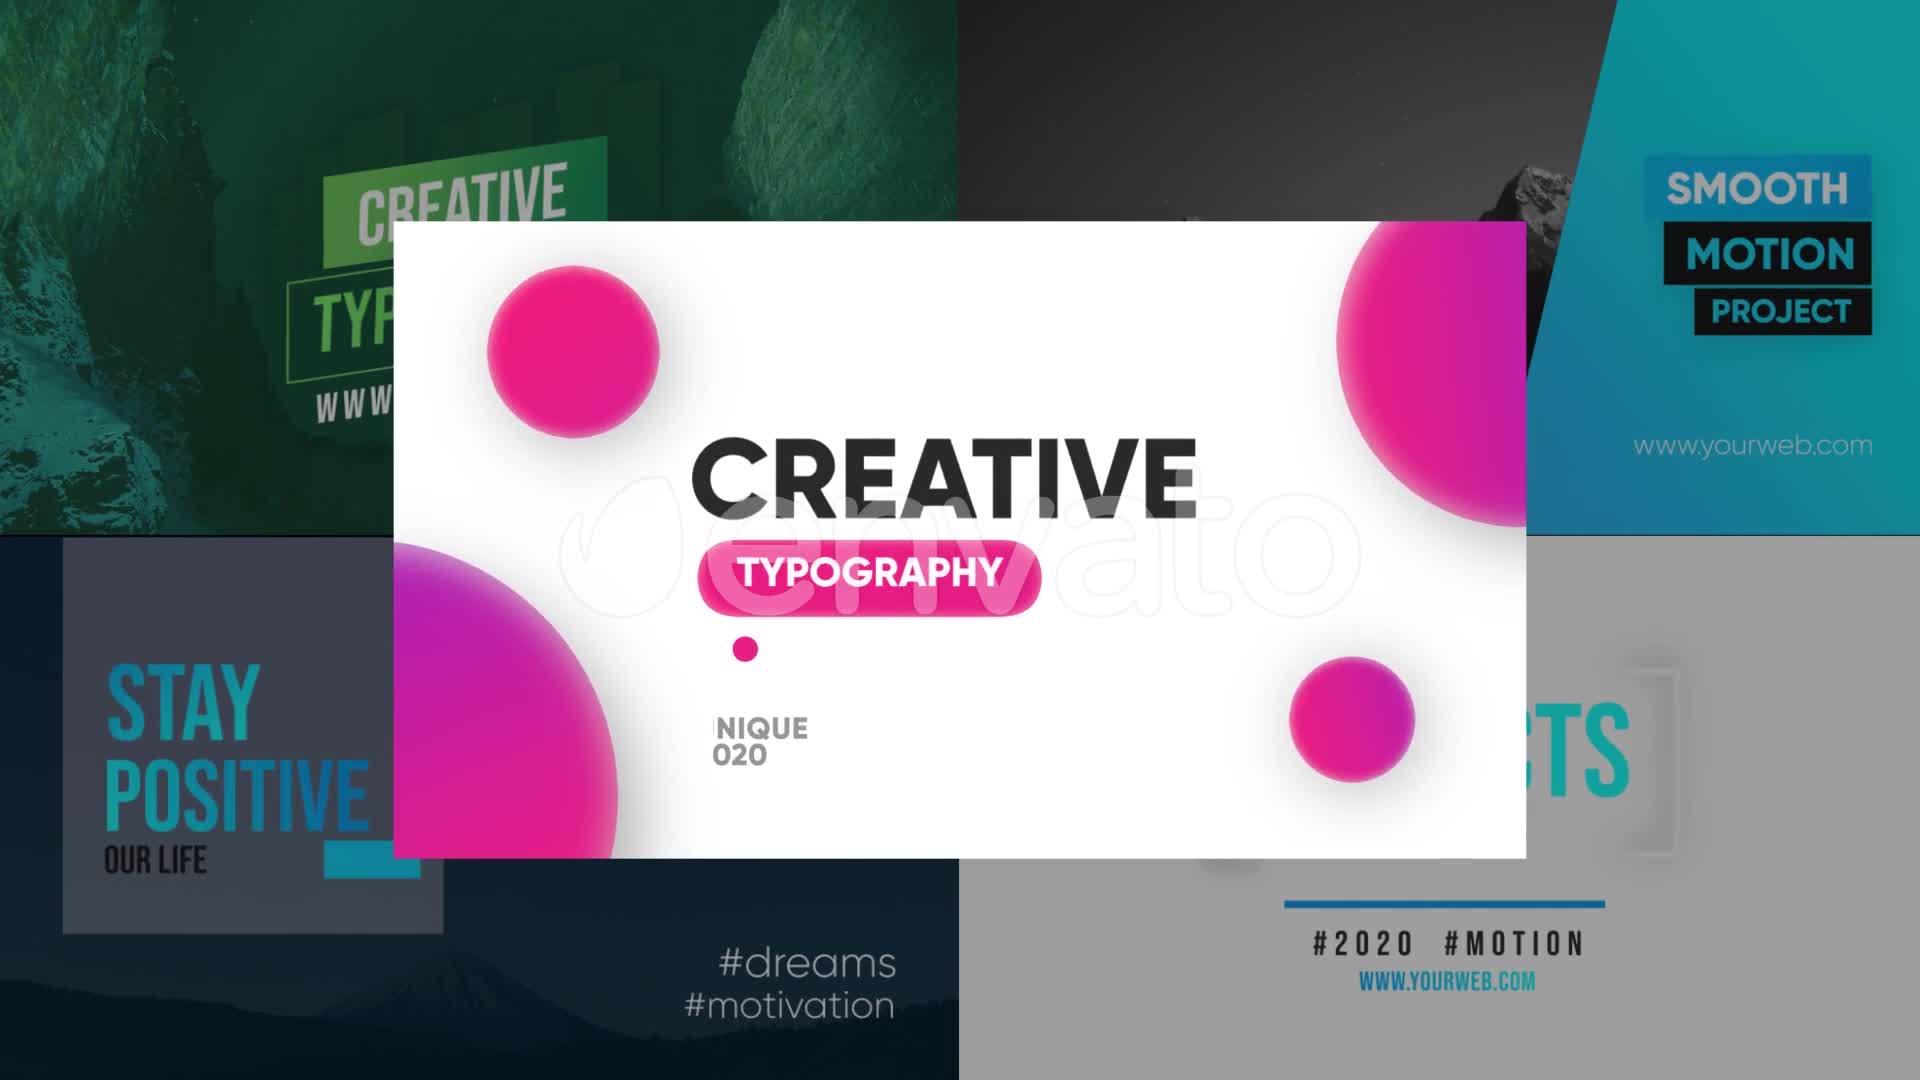 Creative Typography Premiere Pro Videohive 26180976 Premiere Pro Image 1